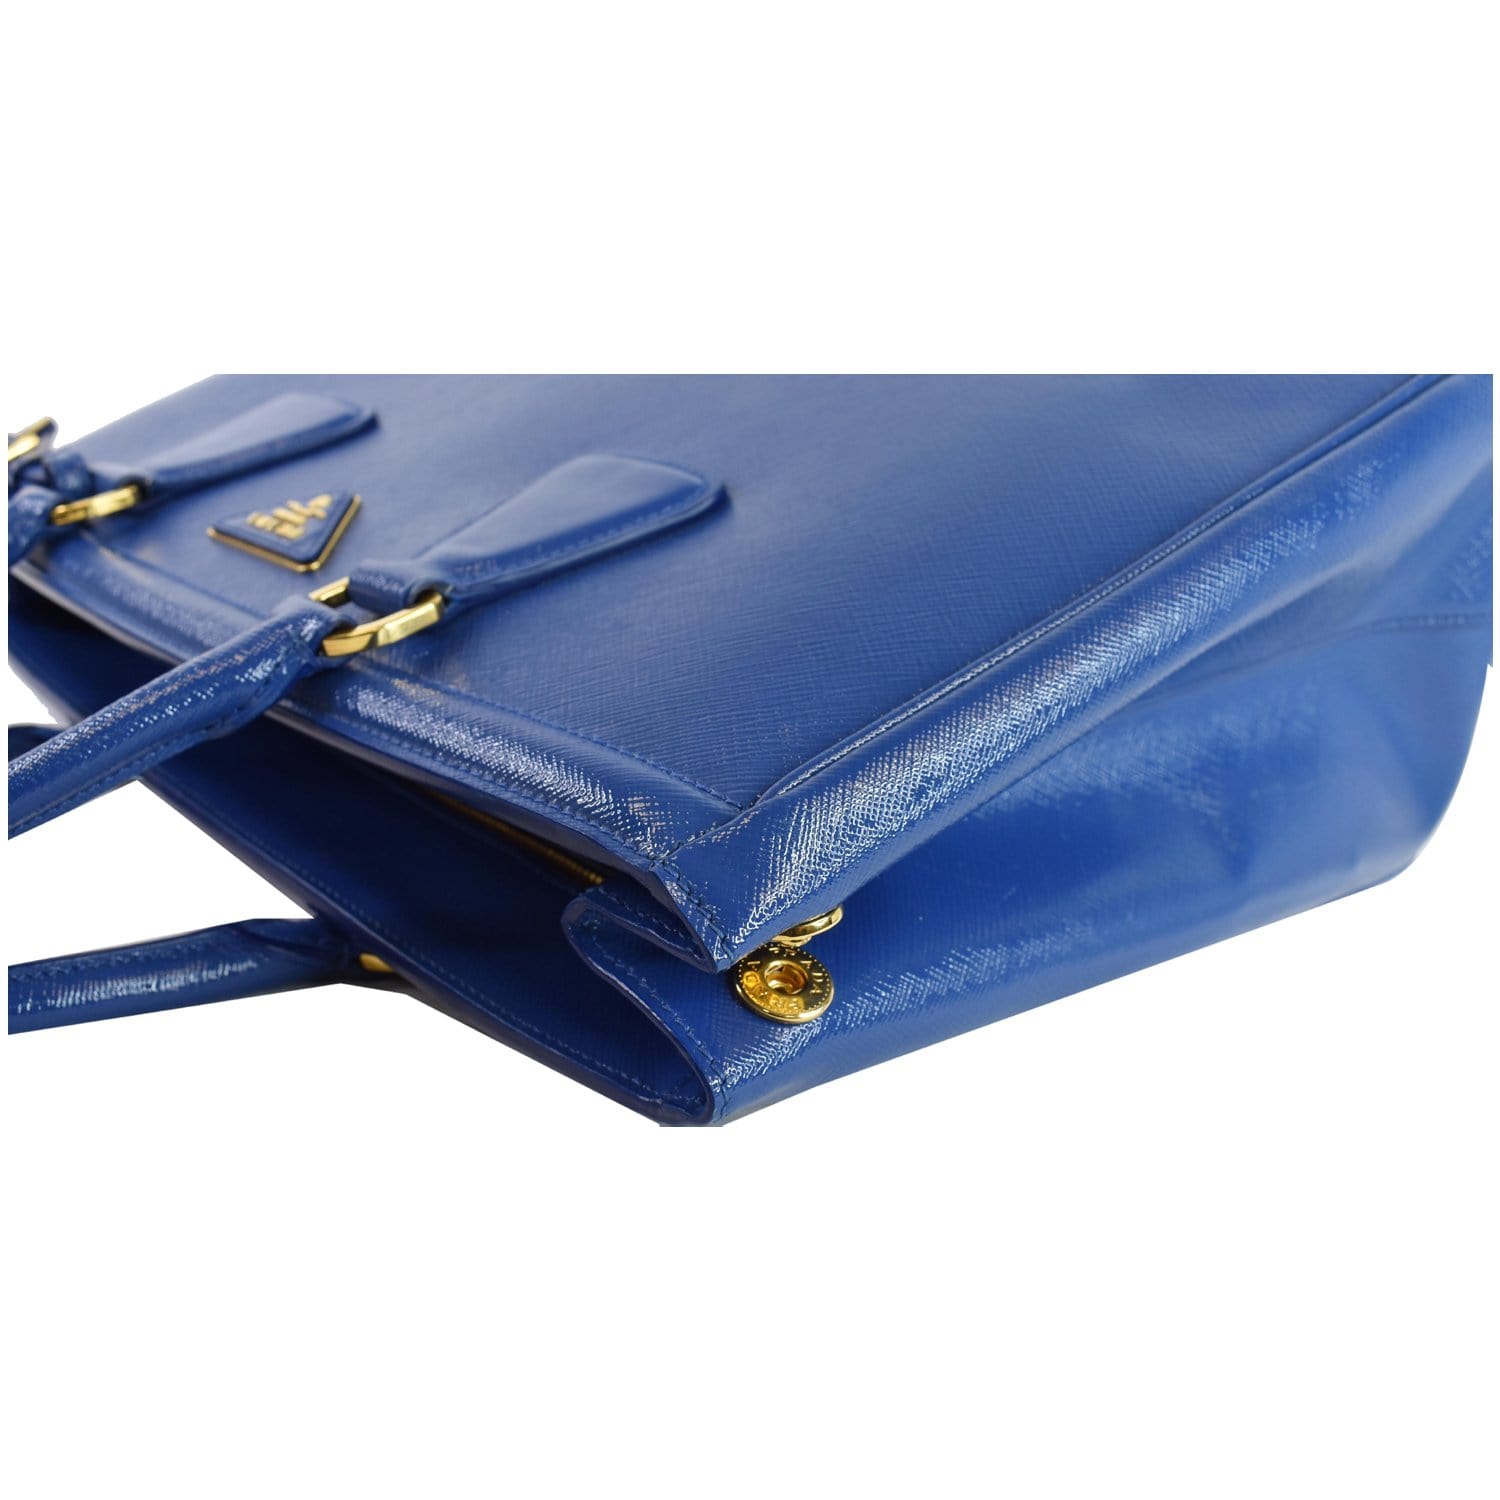 cobalt blue prada blue bag